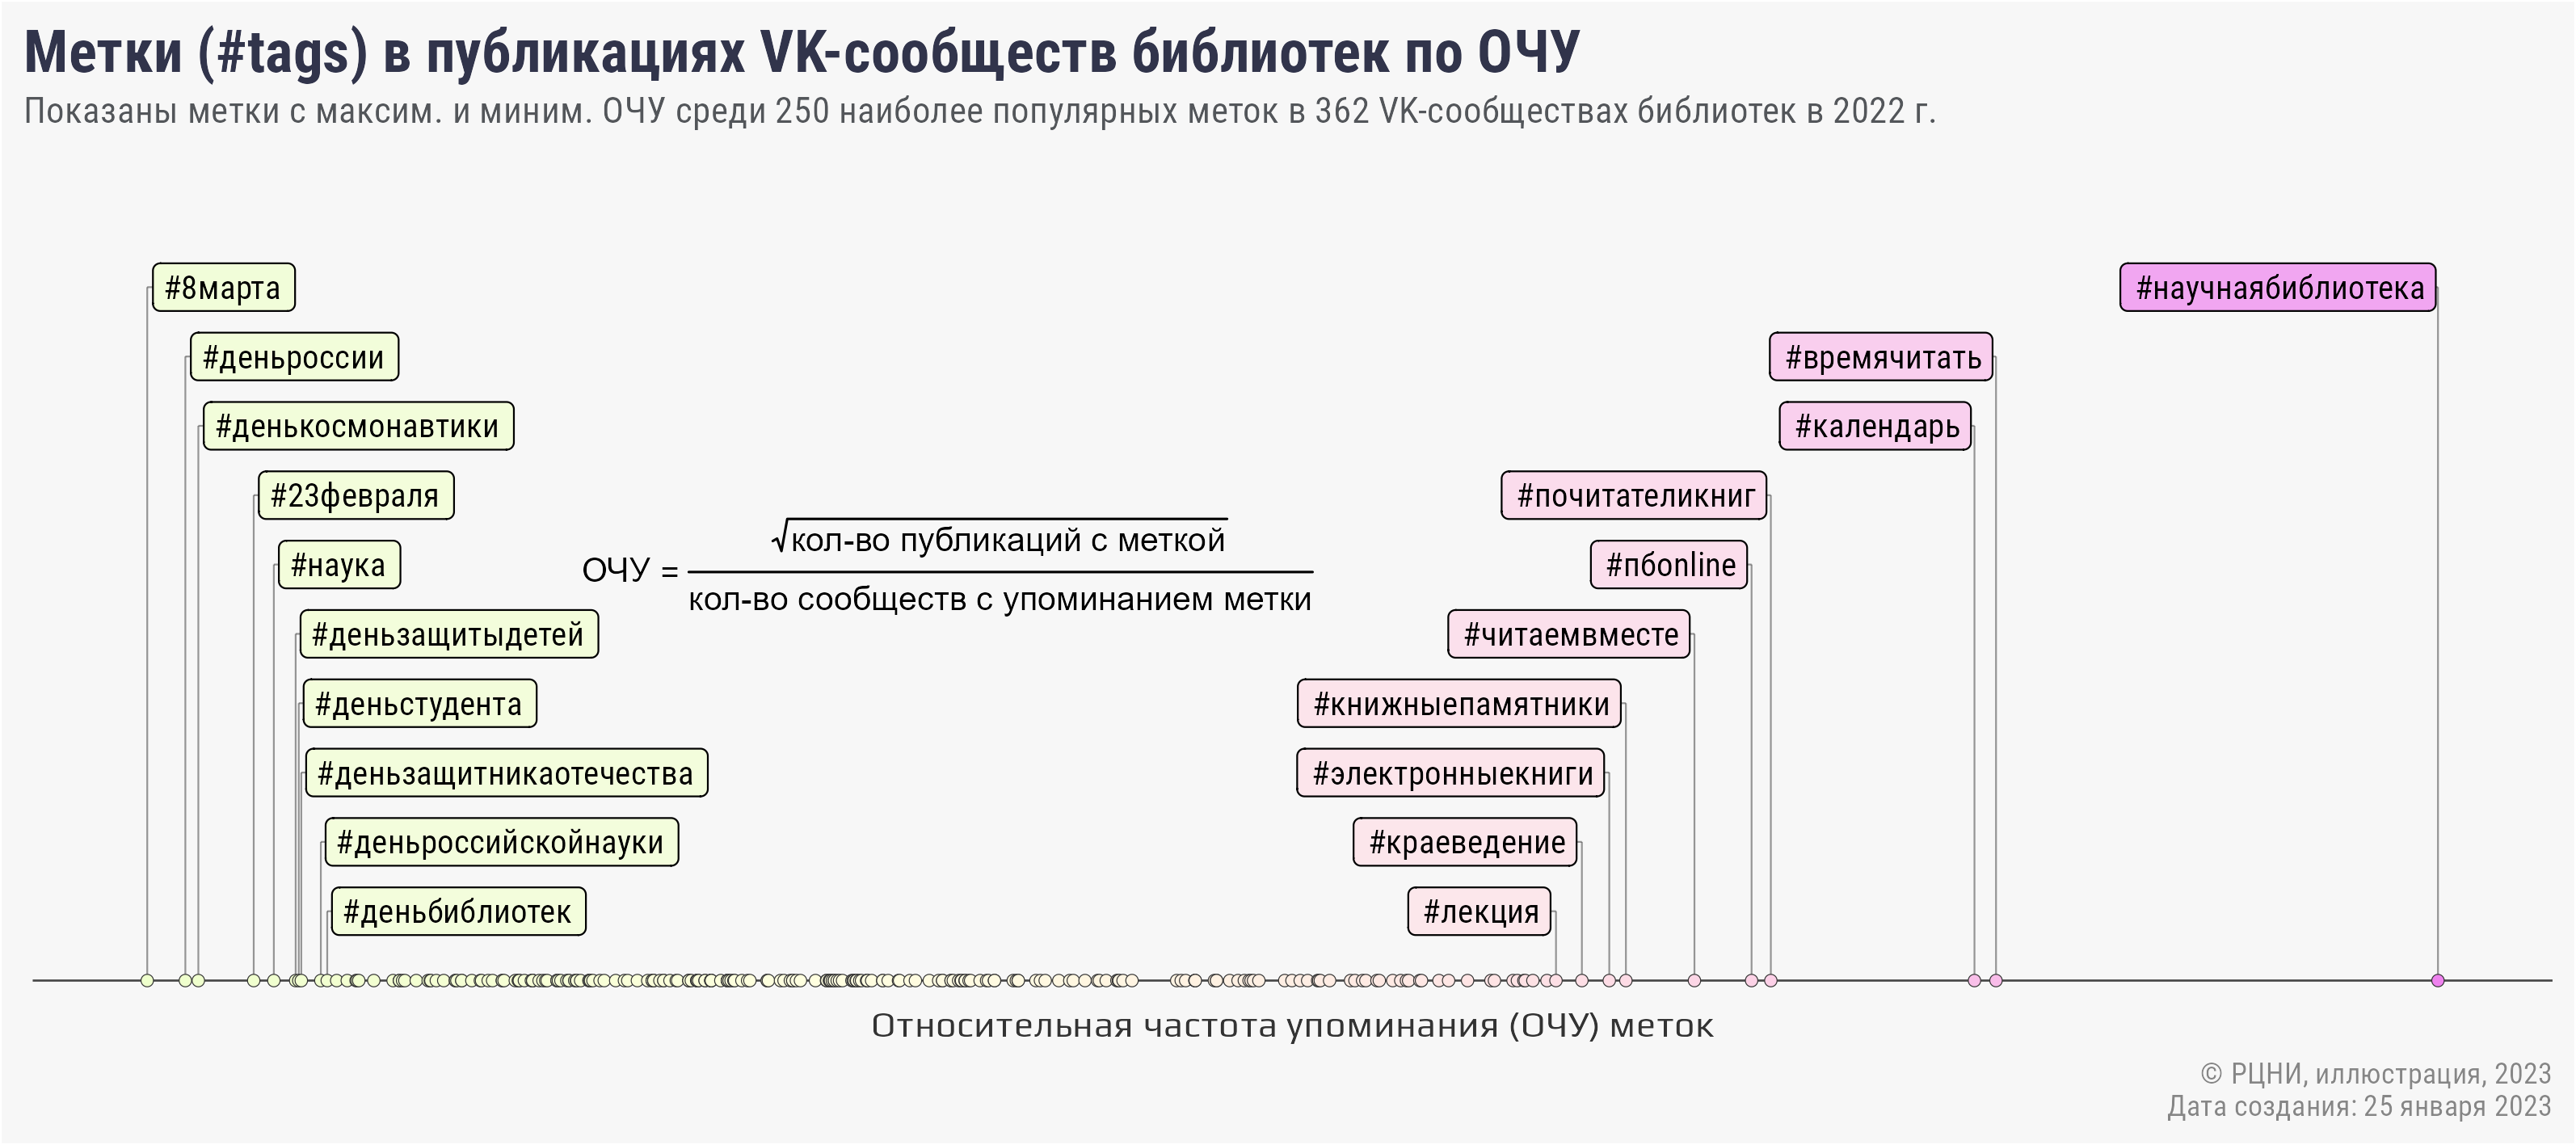 Анализ публикаций и цитирований официальных сообществ библиотек в социальной сети ВКонтакте за 2022 год